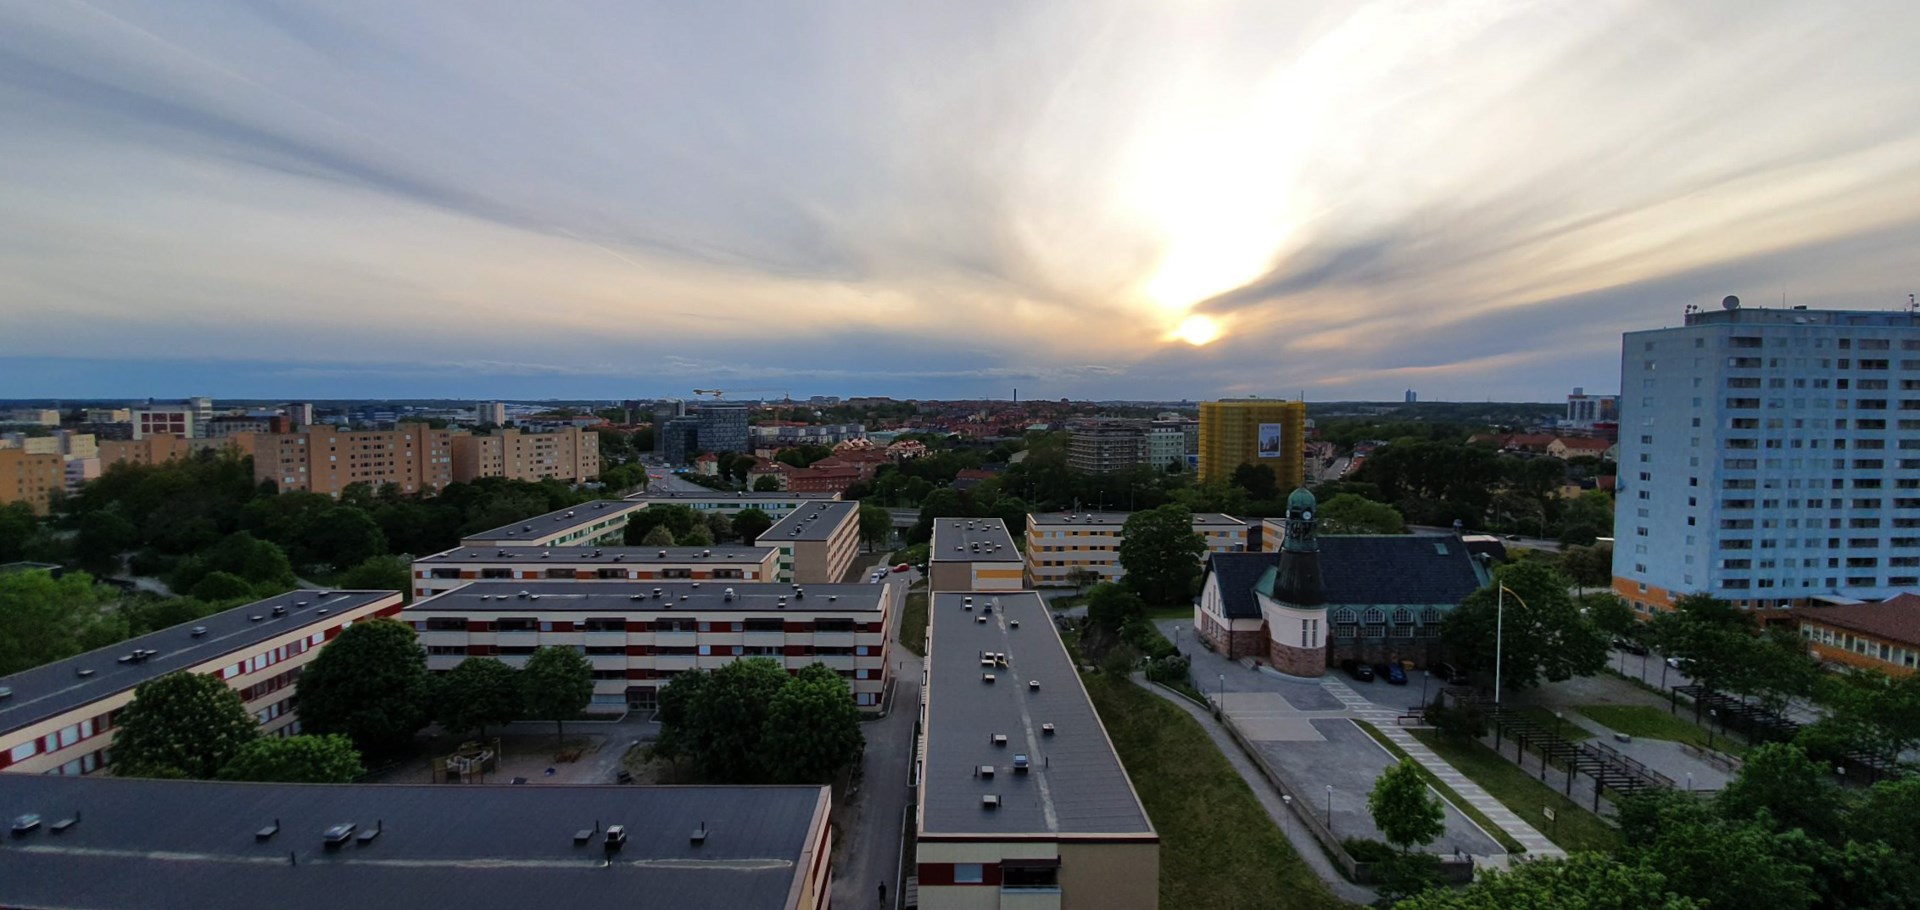 Bostadsrätt i Hagalund, Solna, Sverige, Hagalundsgatan 12